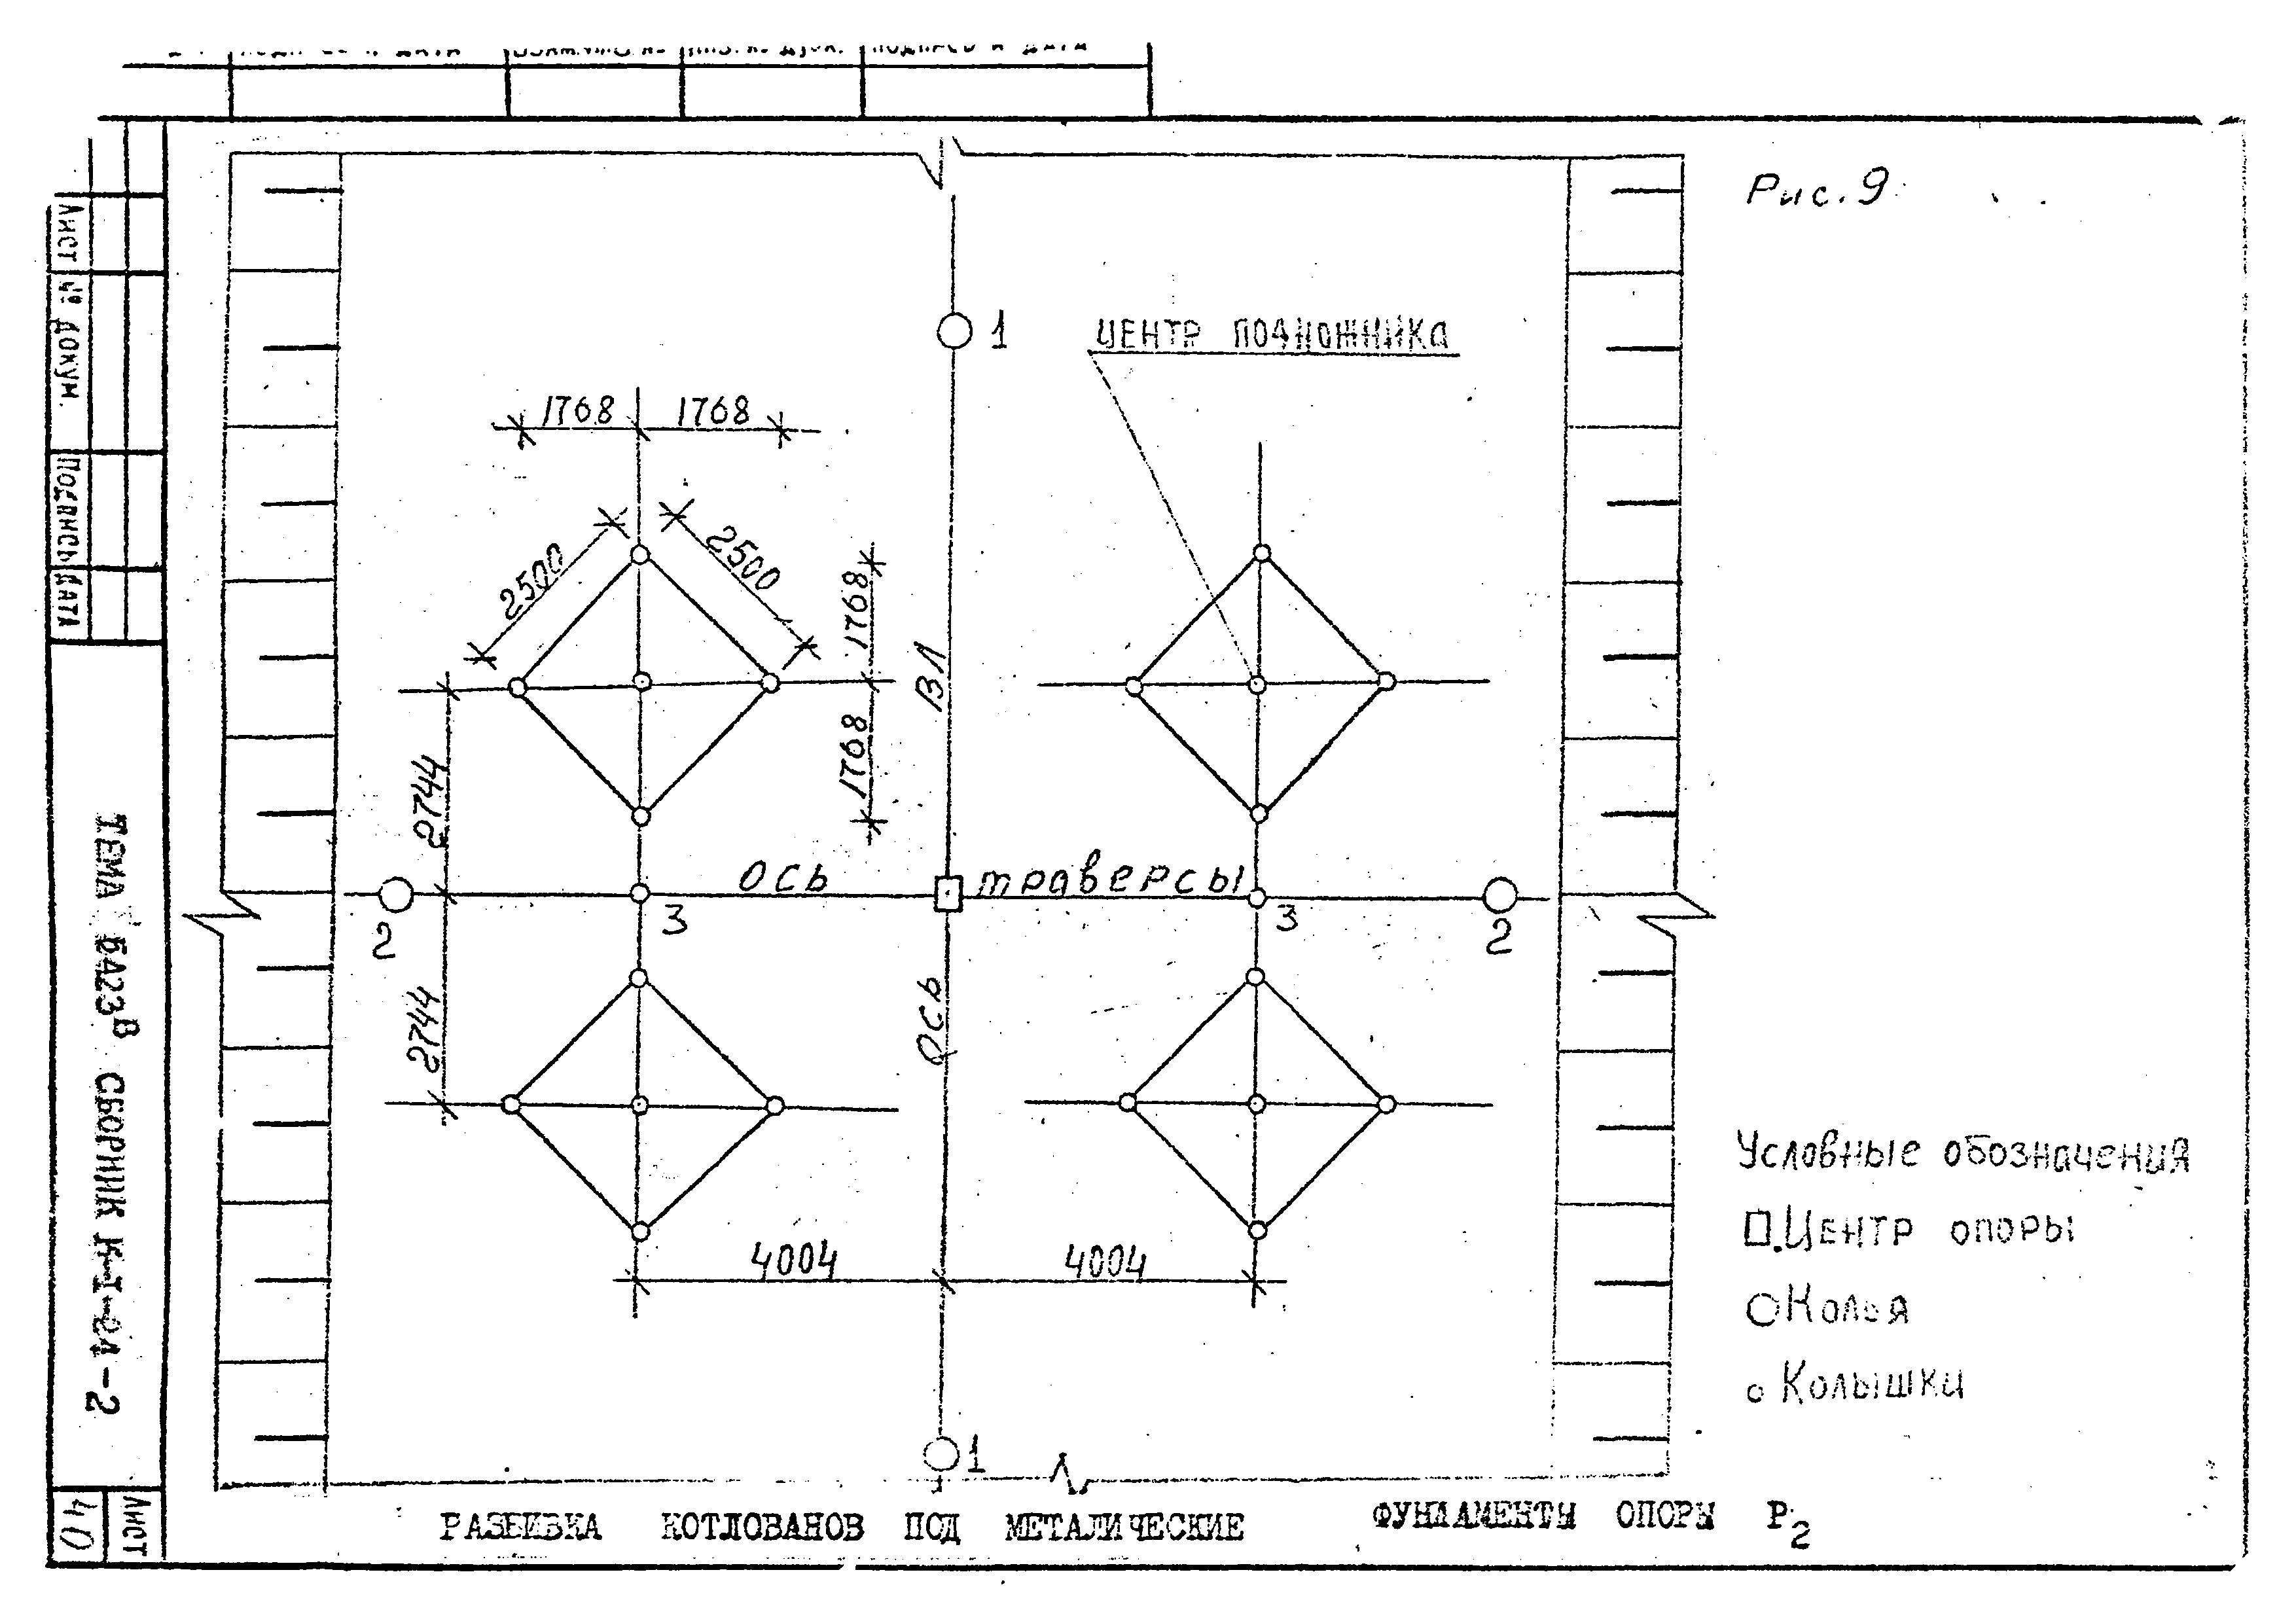 Технологическая карта К-1-24-2